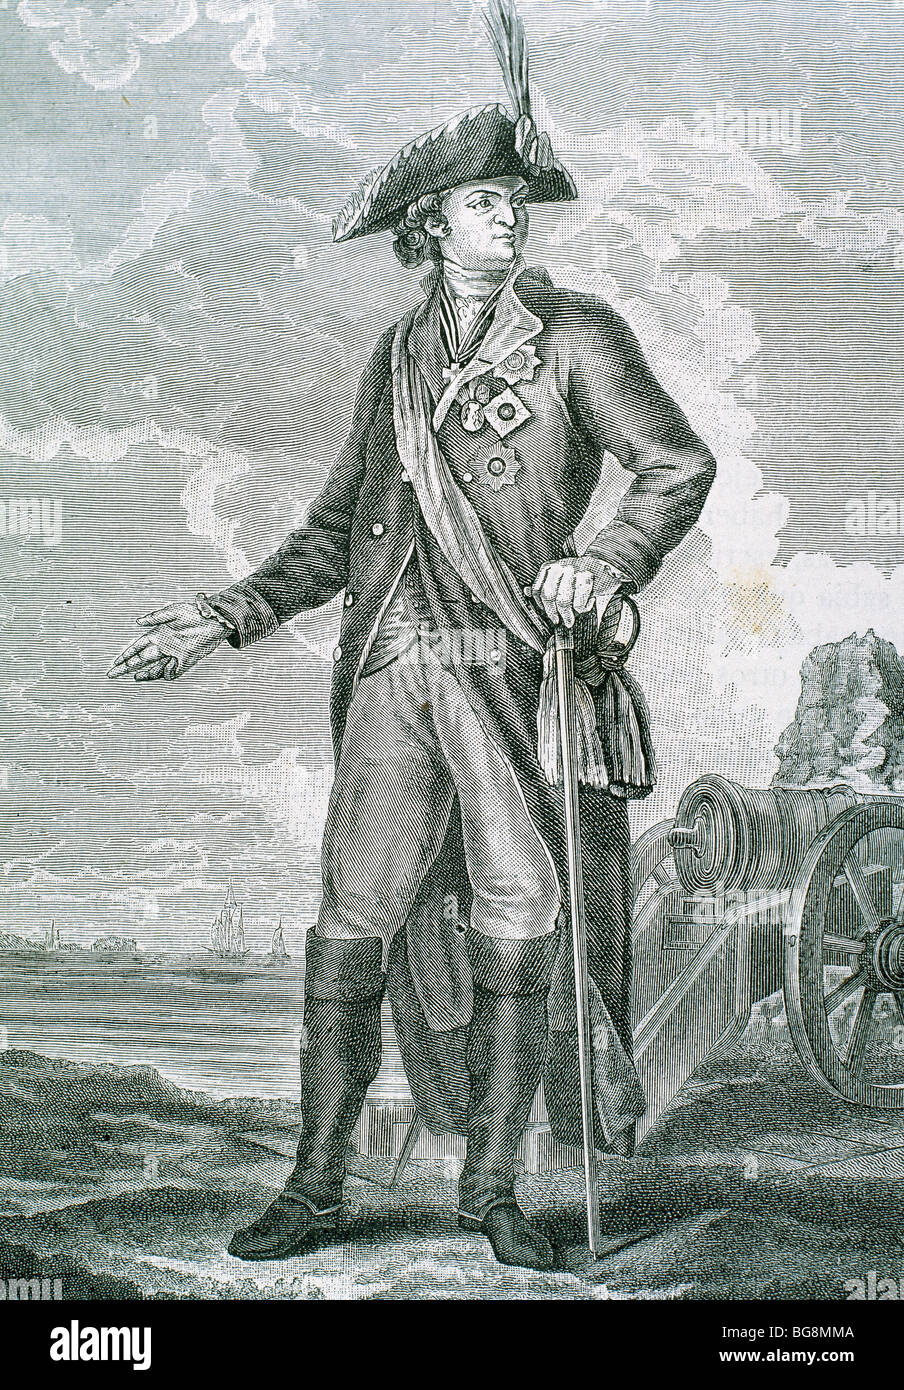 Potemkin, Grigory Aleksandrović (Cizevo, 1739 Nikolajev, 1791). Russischer Soldat und Politiker. Gravur. Stockfoto